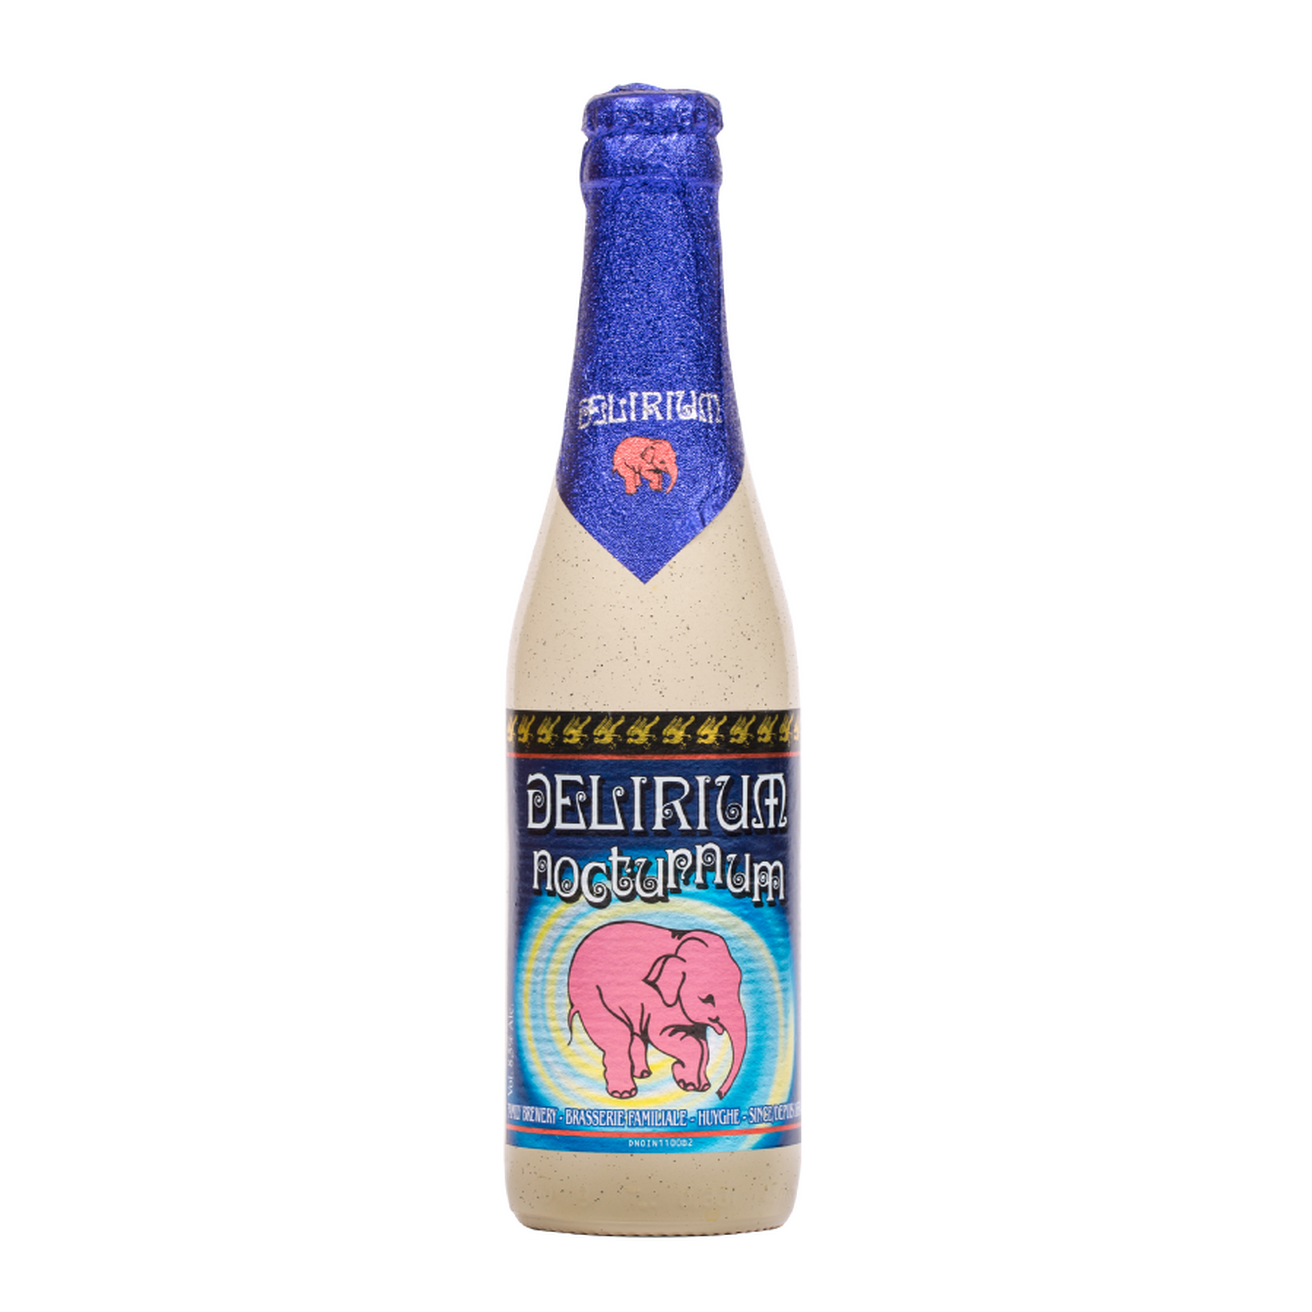 Delirium Nocturm Belgian Strong Ale 330ml 8.5%